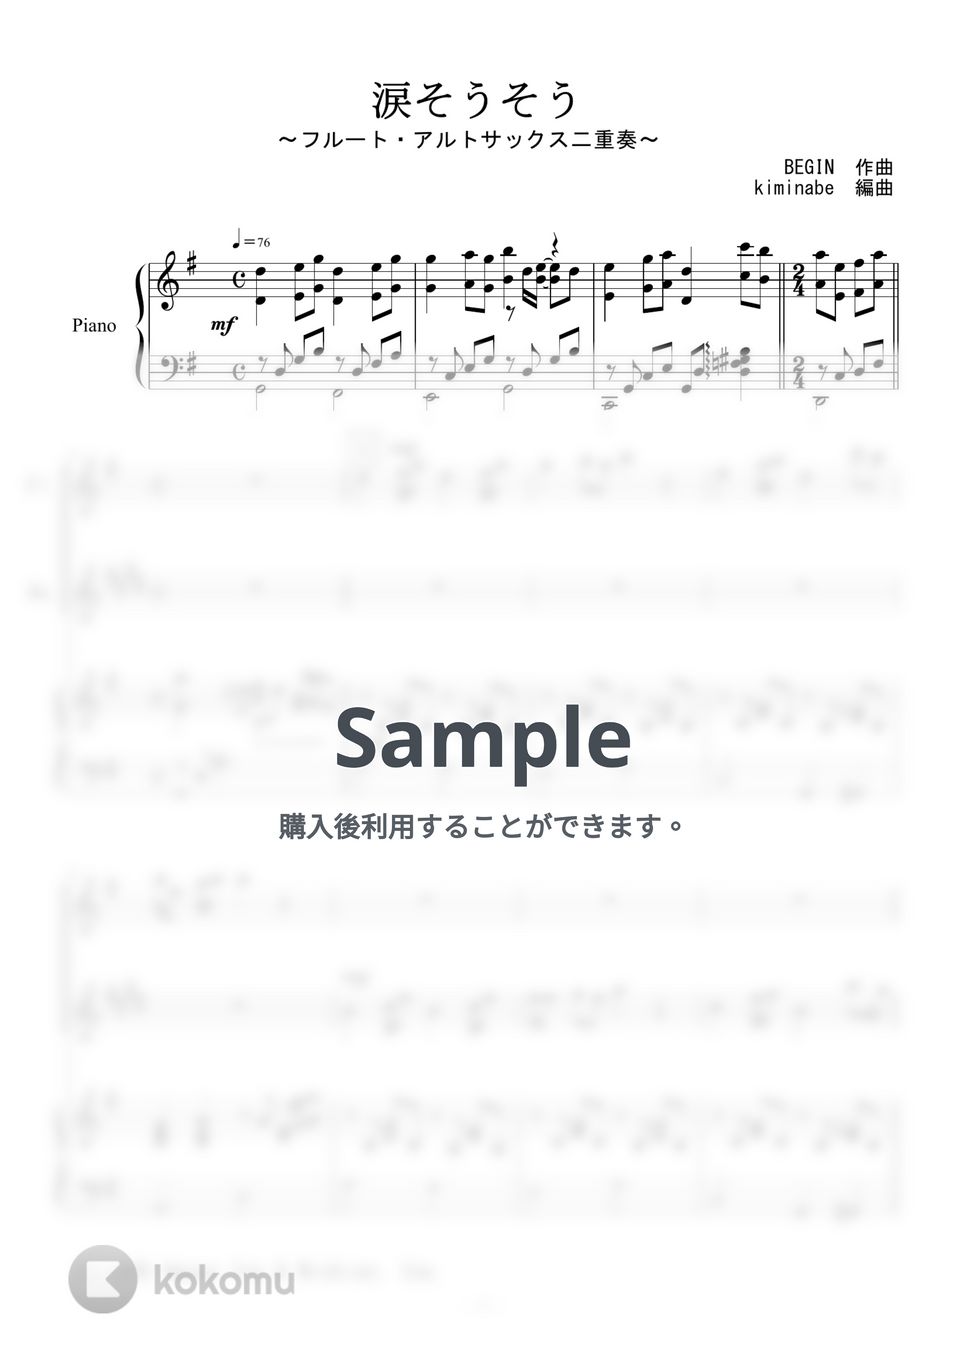 森山良子 - 涙そうそう (フルート・アルトサックス二重奏) by kiminabe